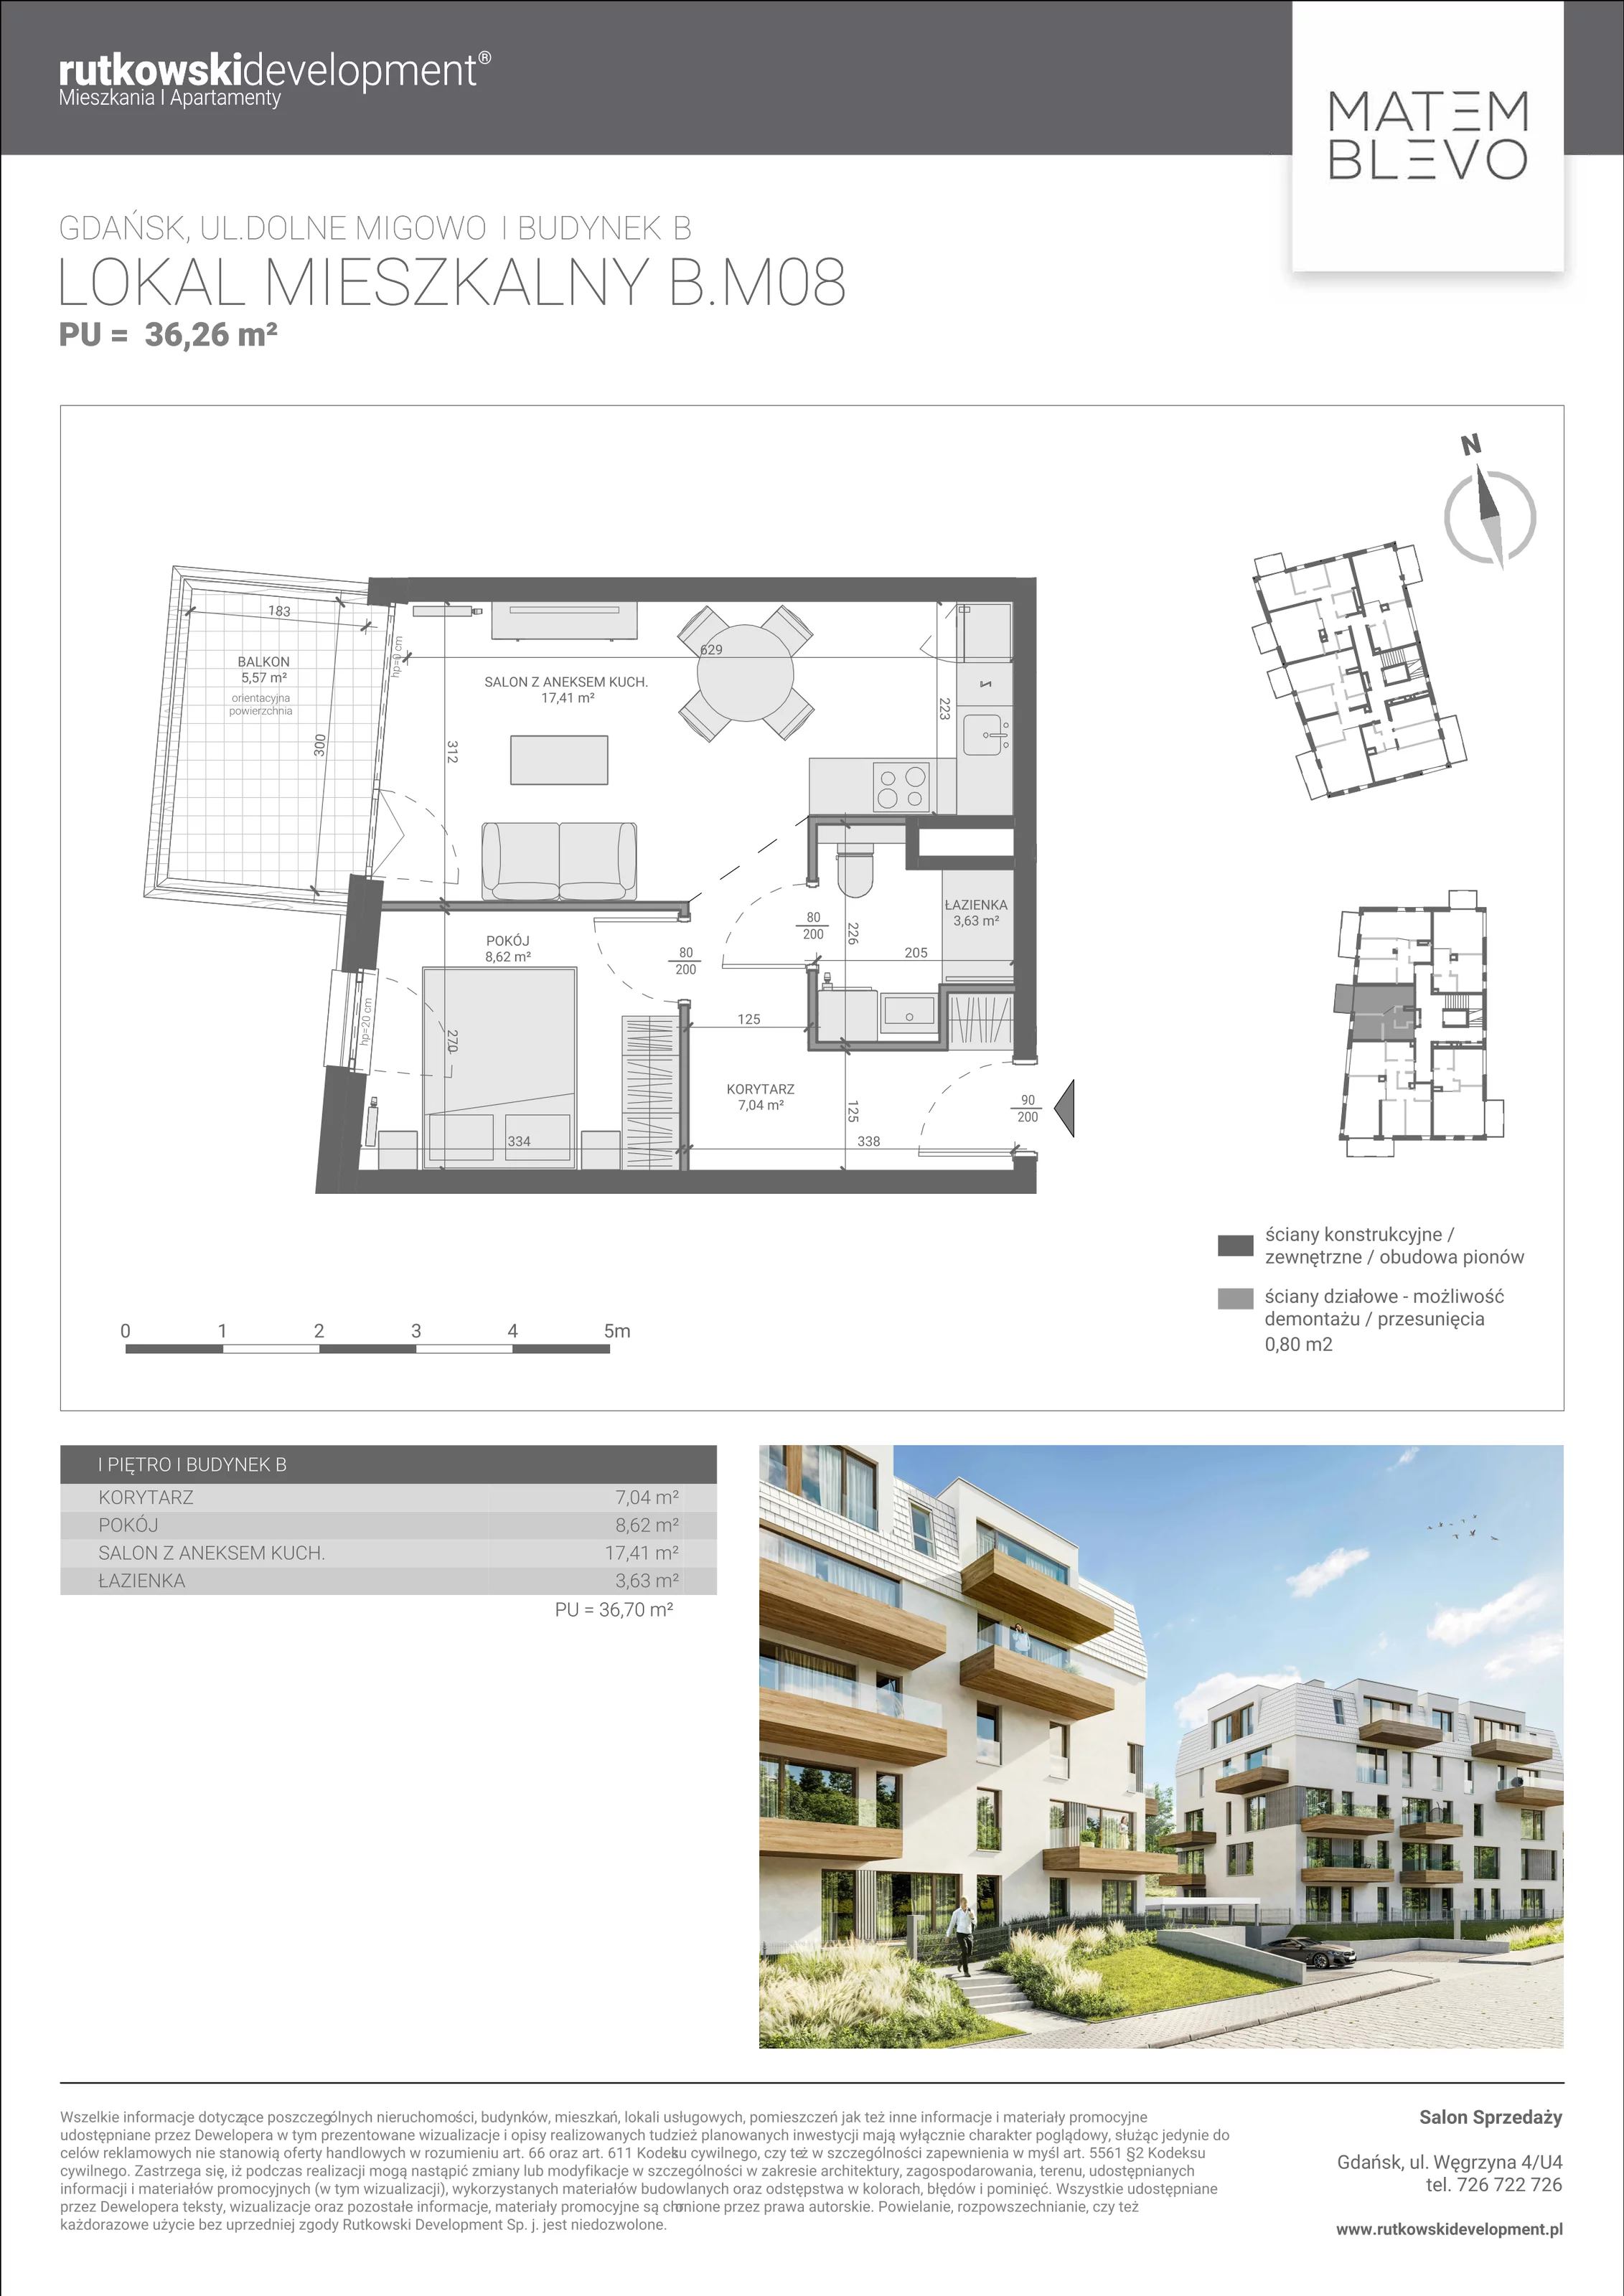 Mieszkanie 36,70 m², piętro 1, oferta nr B.M08, Matemblevo, Gdańsk, Brętowo, ul. Dolne Migowo 23 D